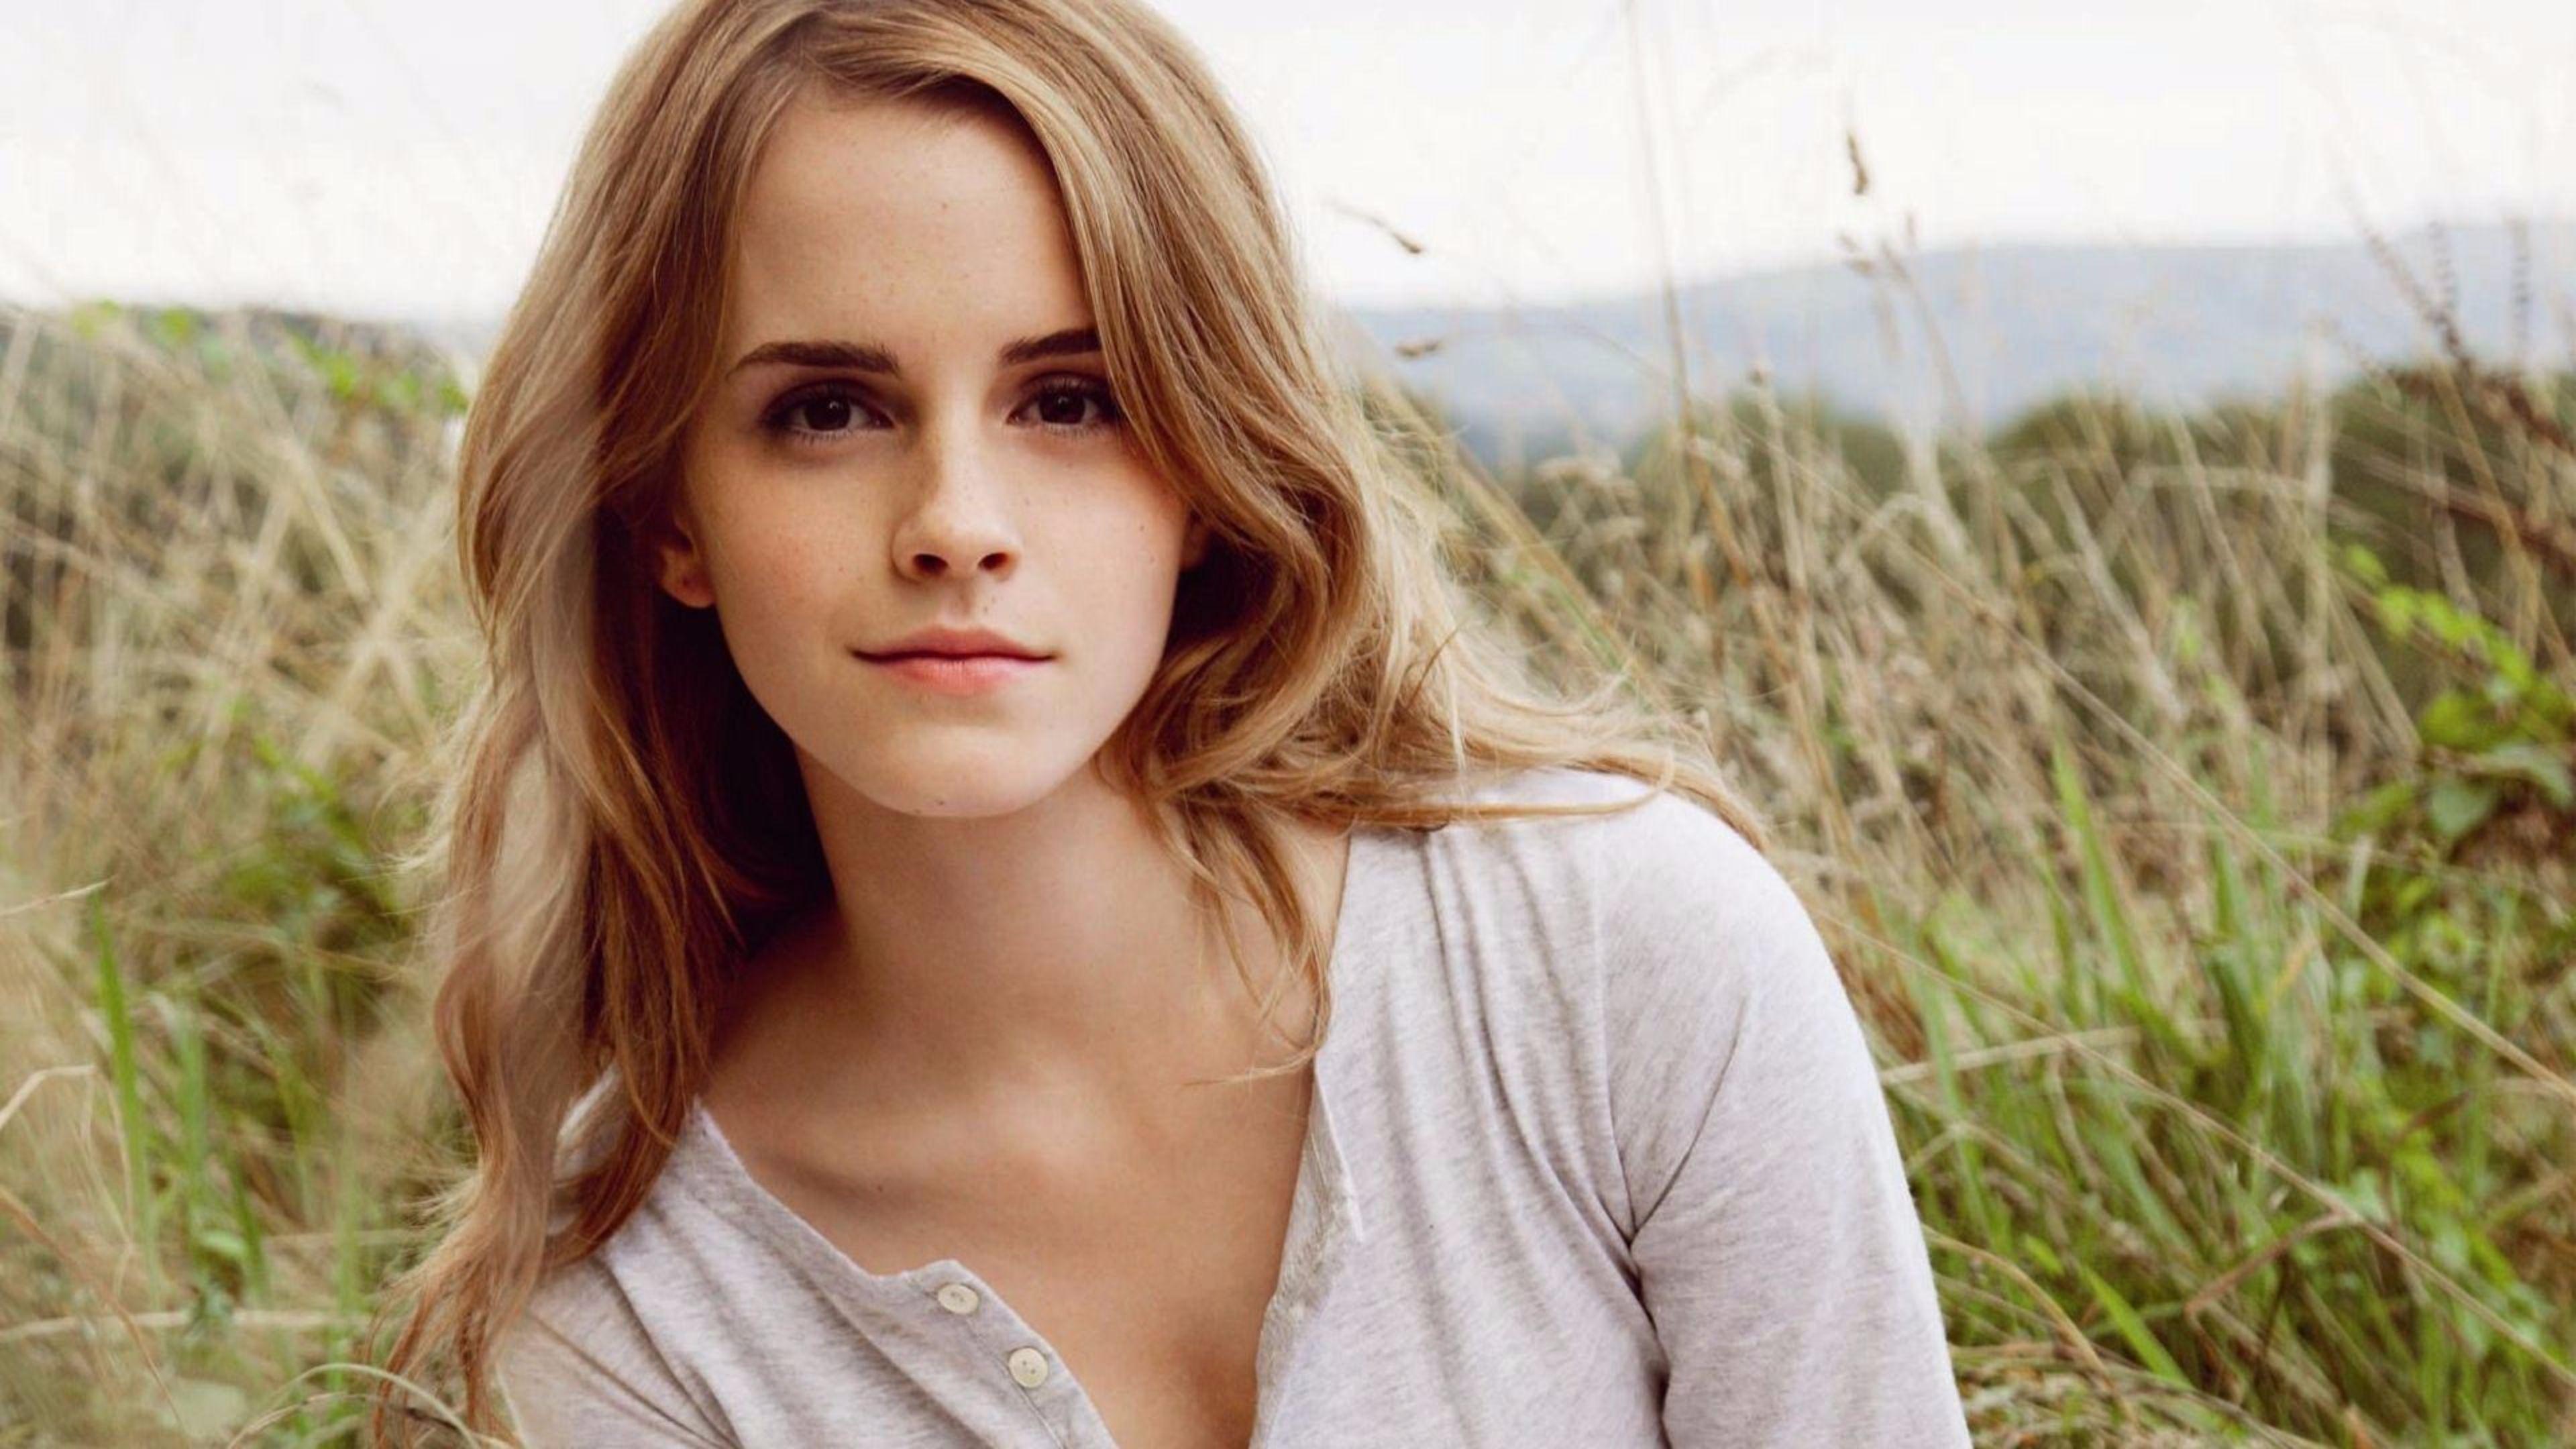 Hot Emma Watson 4K Wallpaper. Free 4K Wallpaper